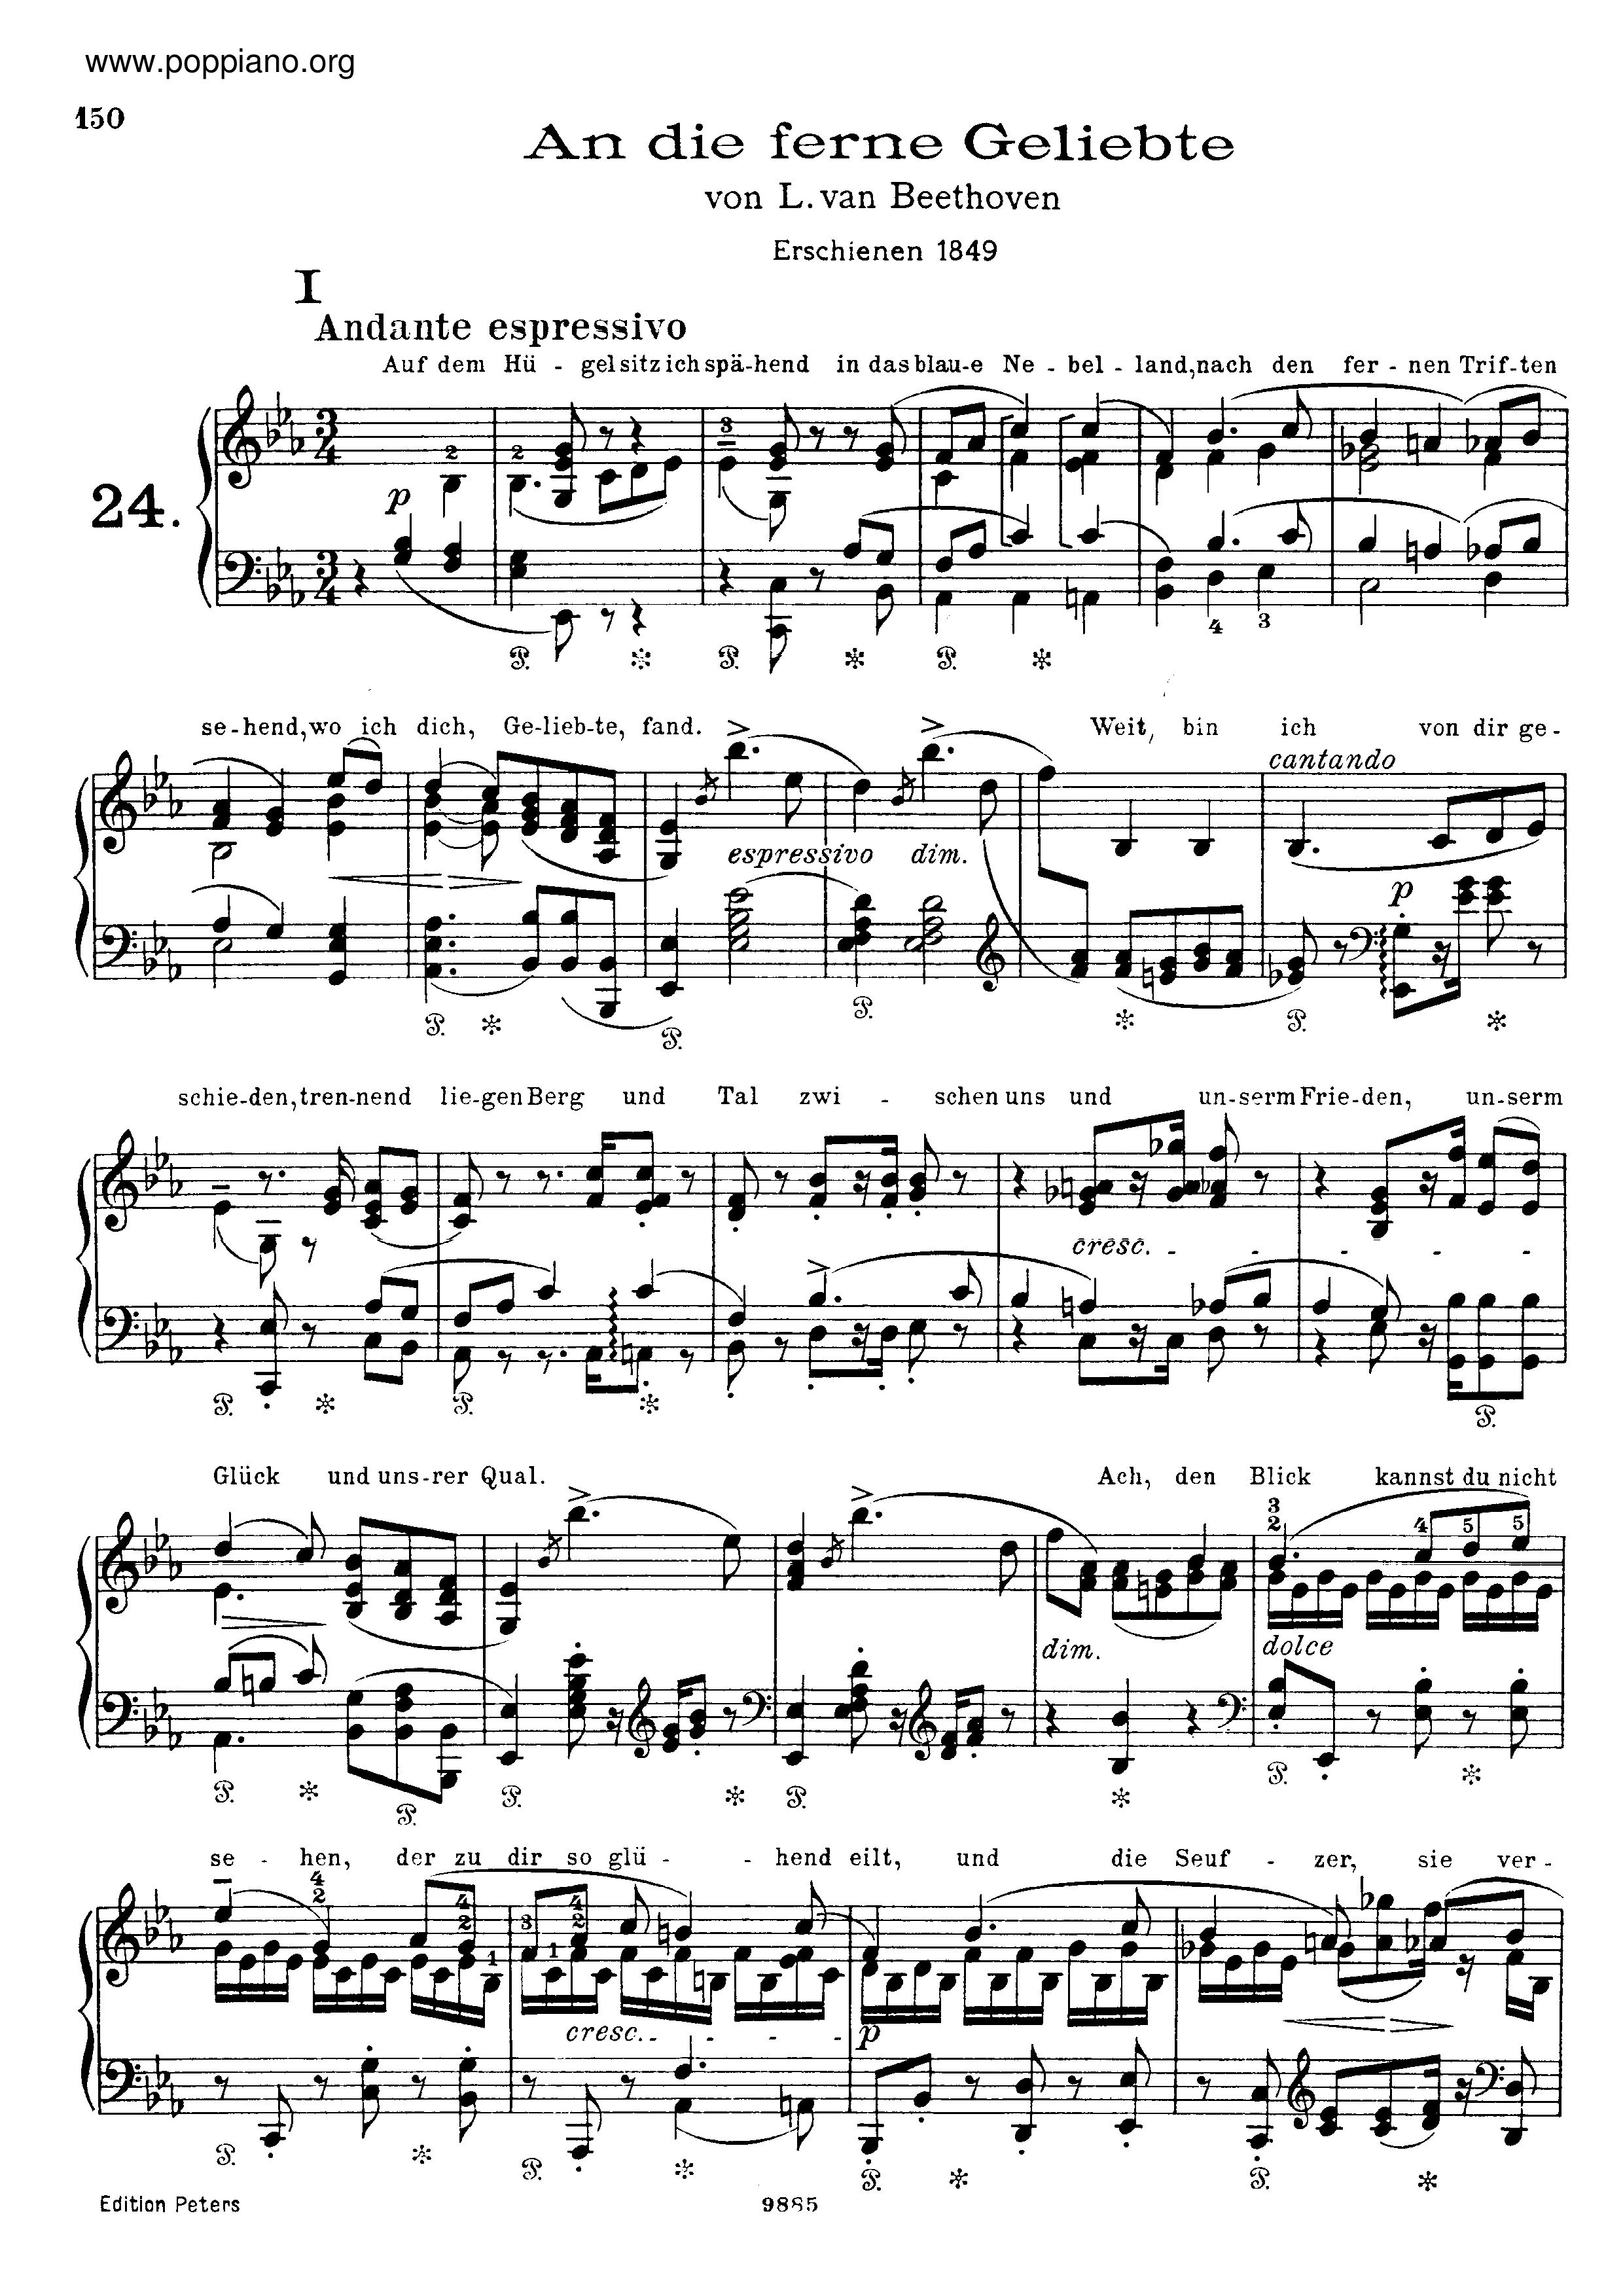 An die ferne Geliebte, by Beethoven, S.469琴譜